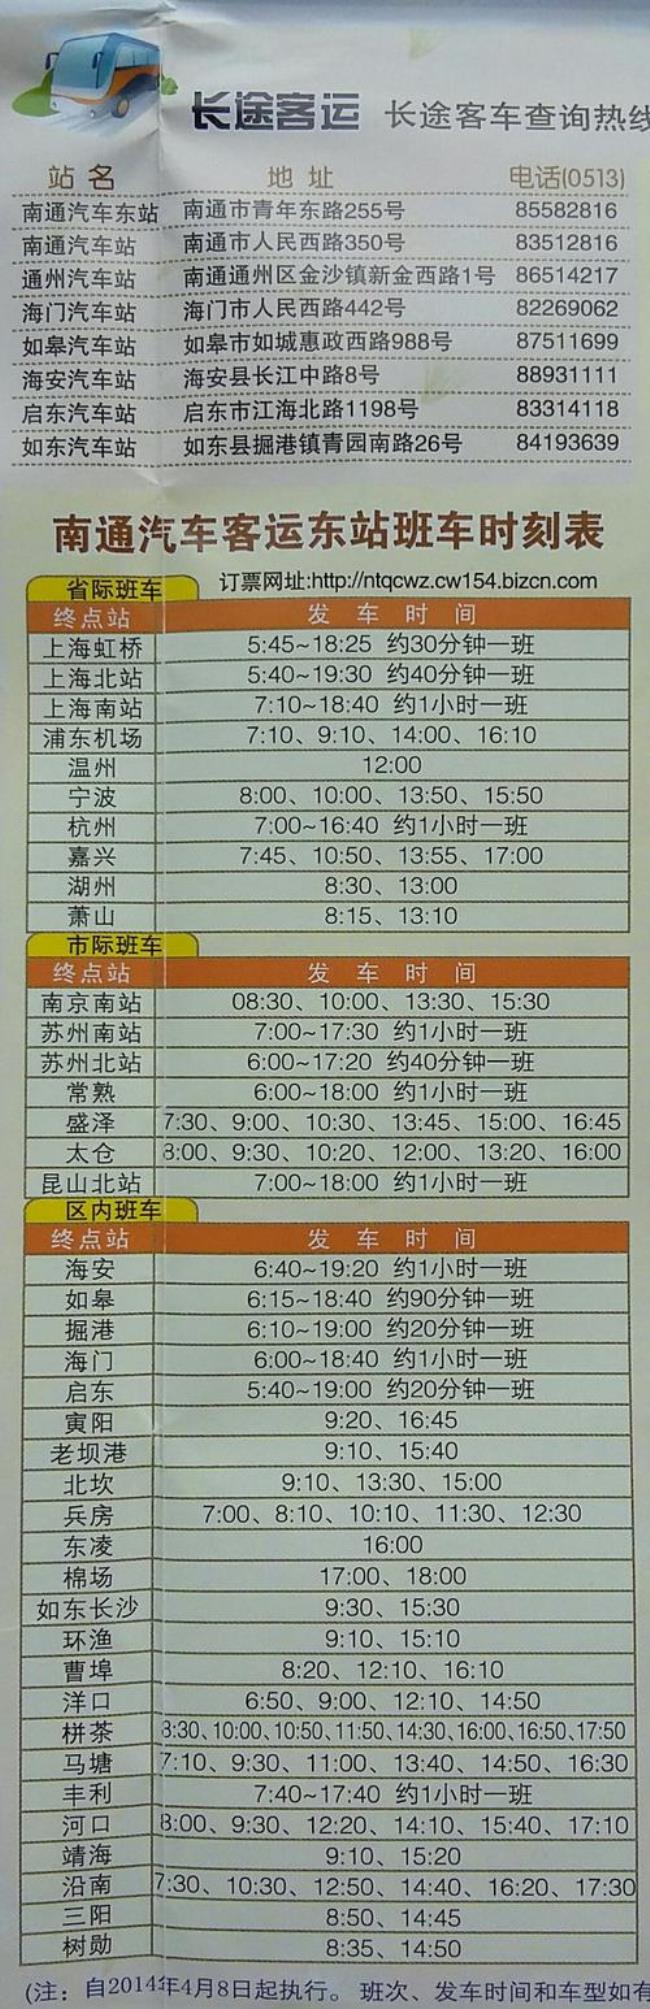 上海到南通东站大巴时刻表